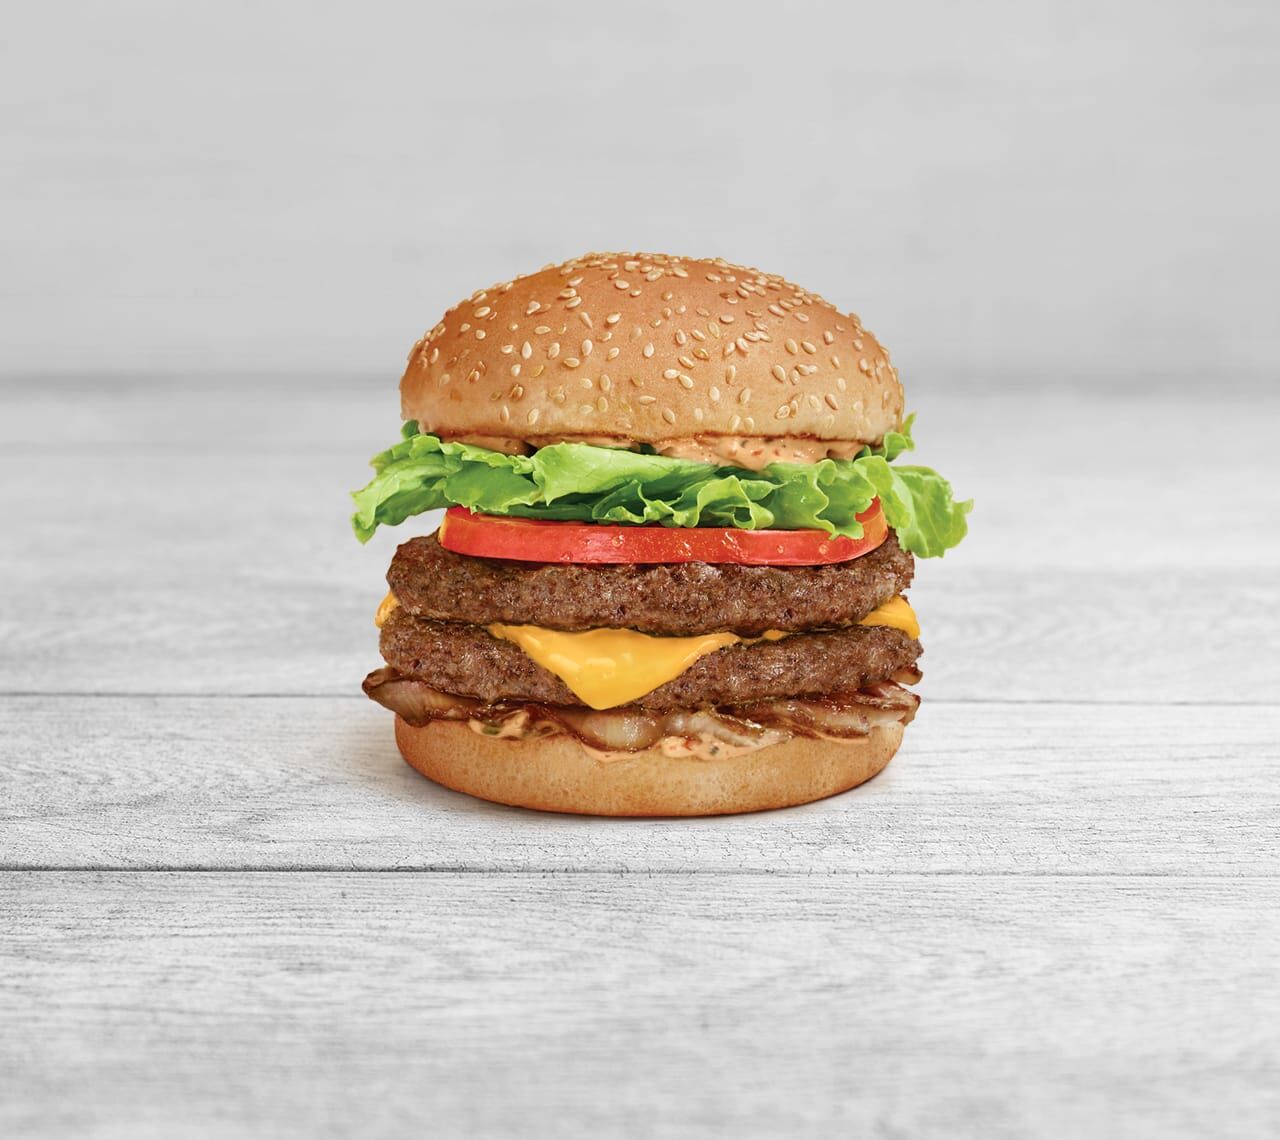 Papa Burger®  A&W Restaurants